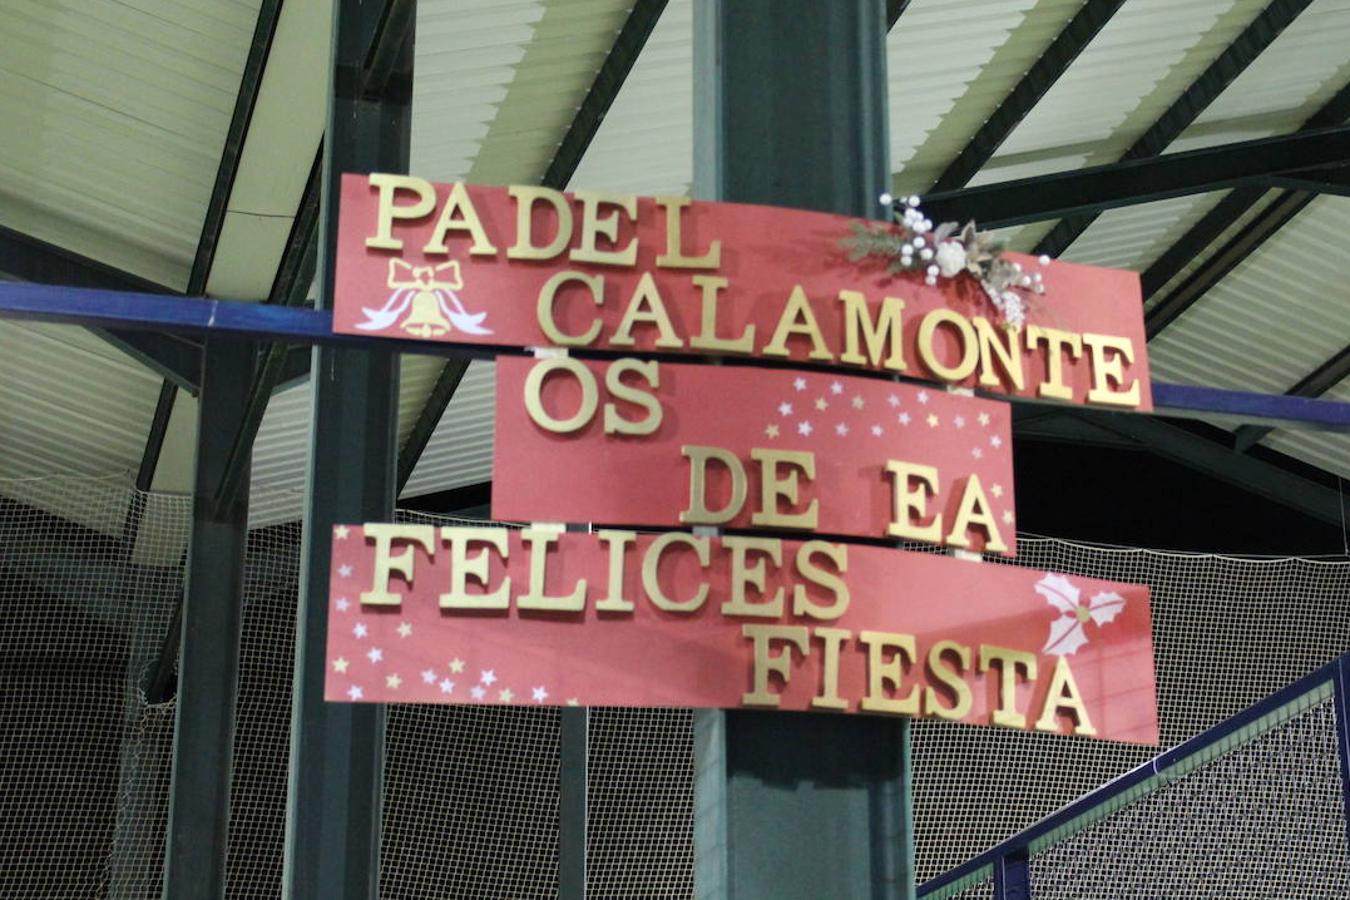 El CD Padelcalamonte deseó una feliz Navidad a través de este cartel